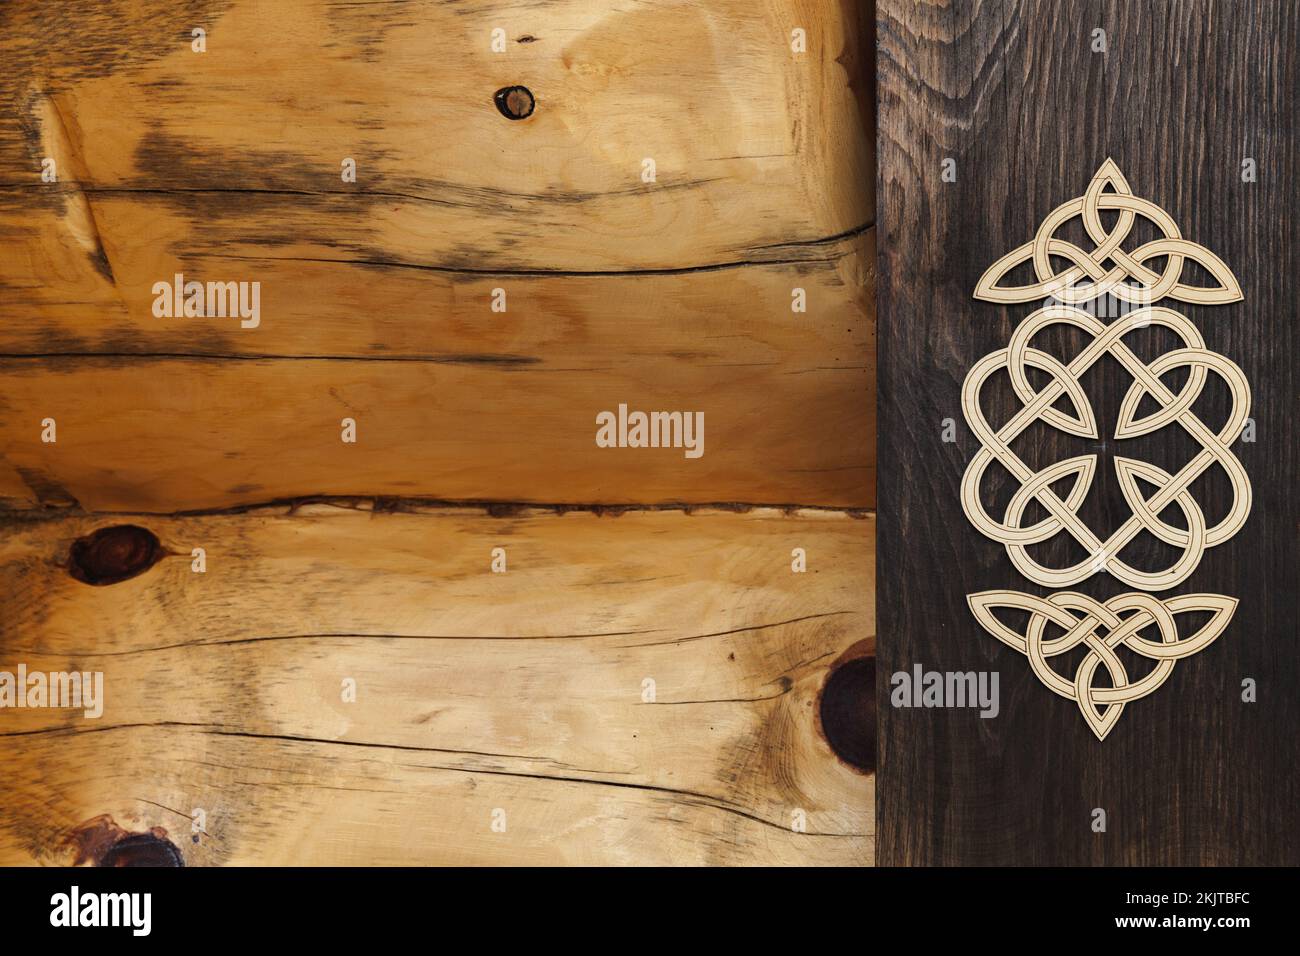 Elementi decorativi in legno sulla parete di casa di tronchi rurale. Ornamenti siberiani. Russia Foto Stock